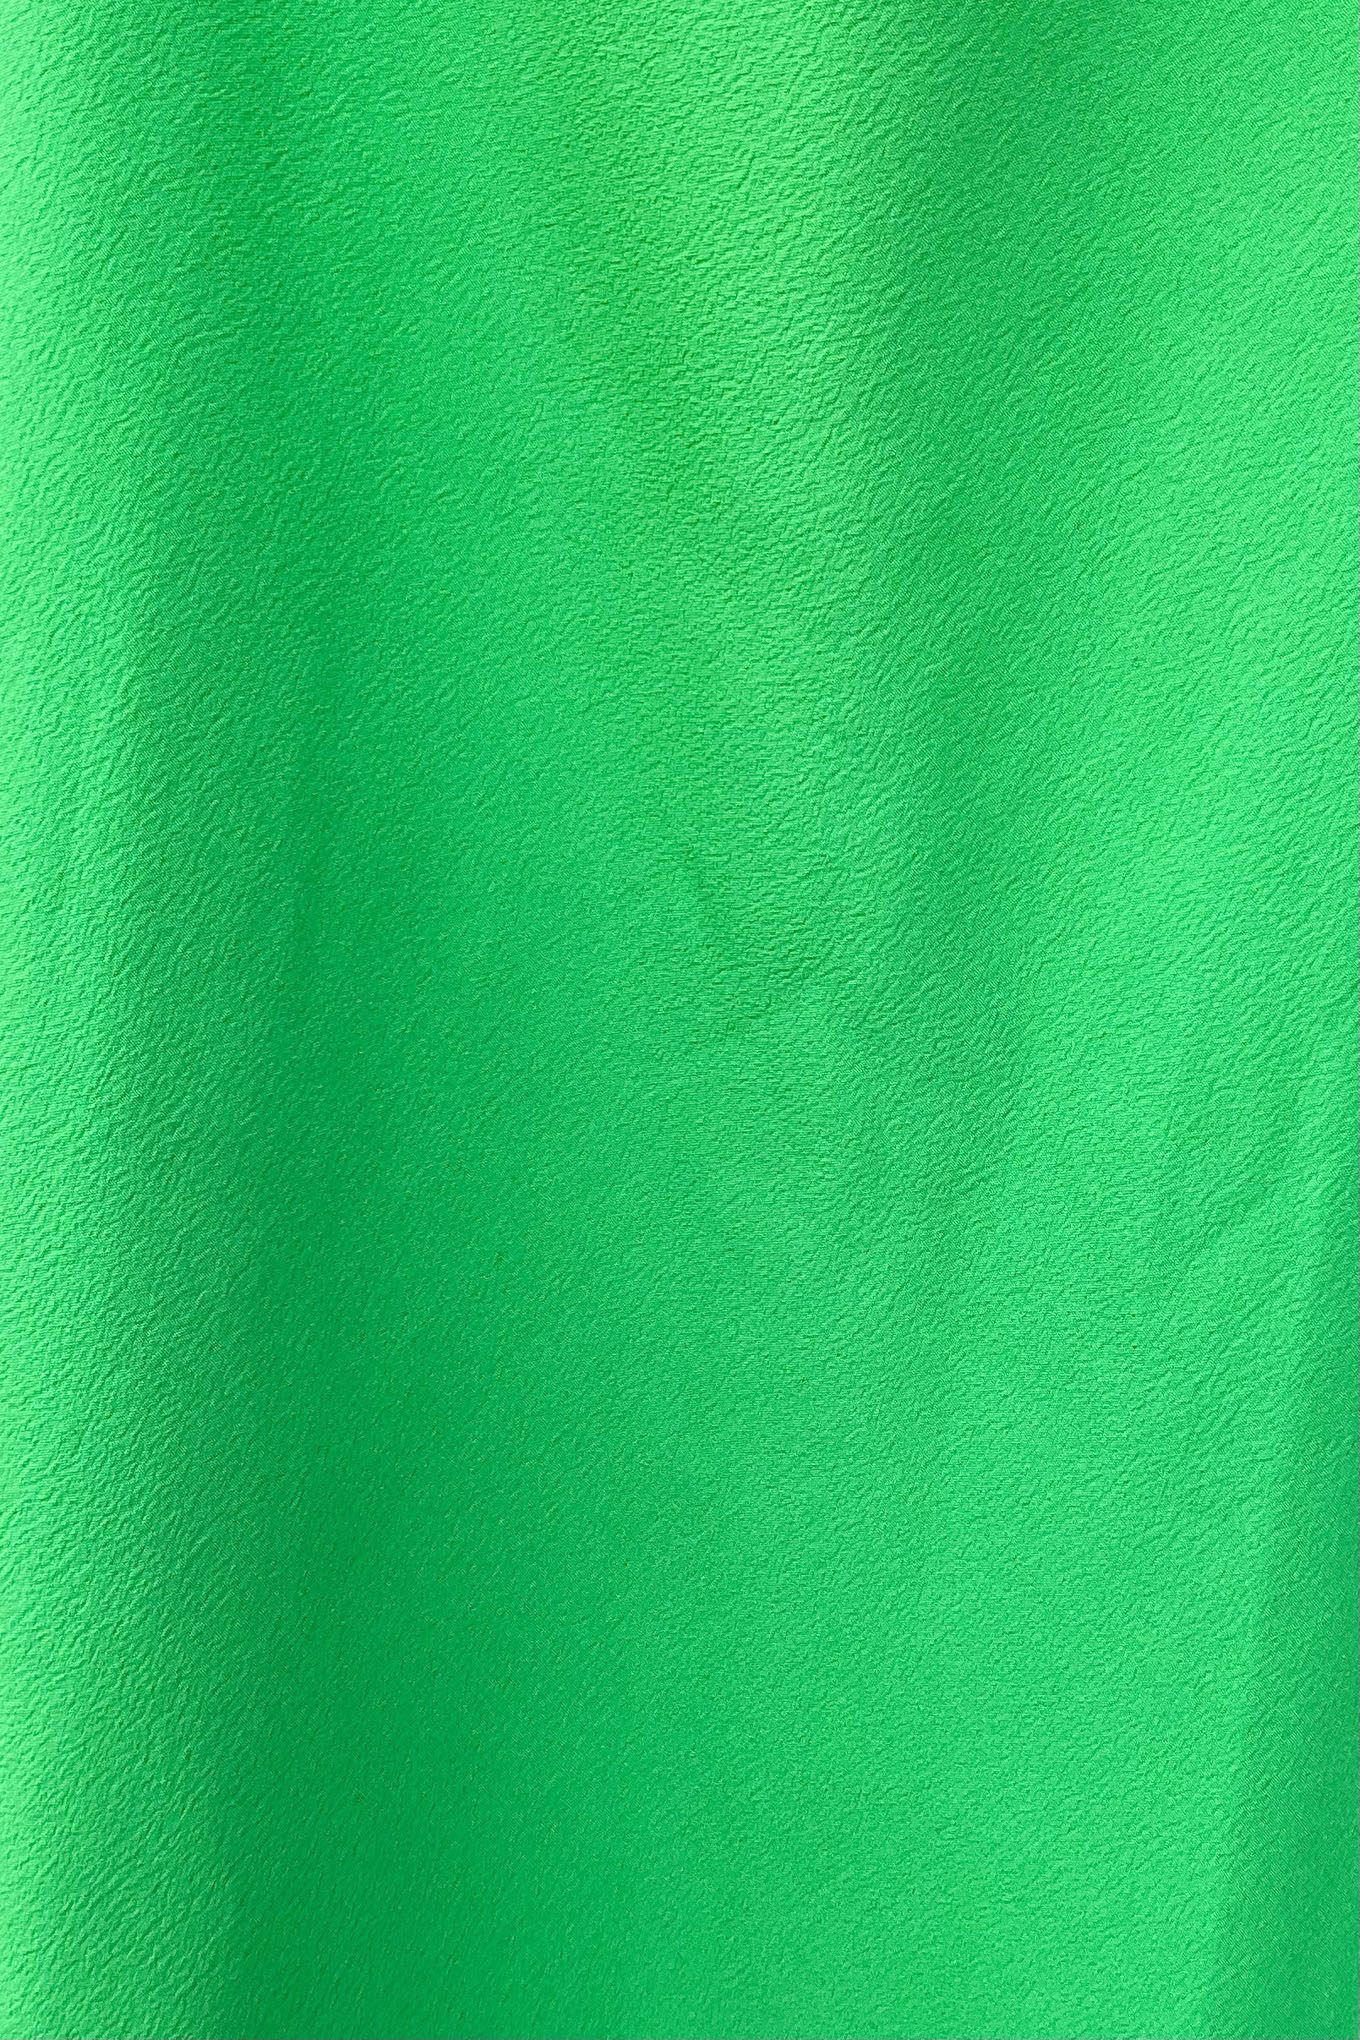 Green Asymmetrical Party Dress